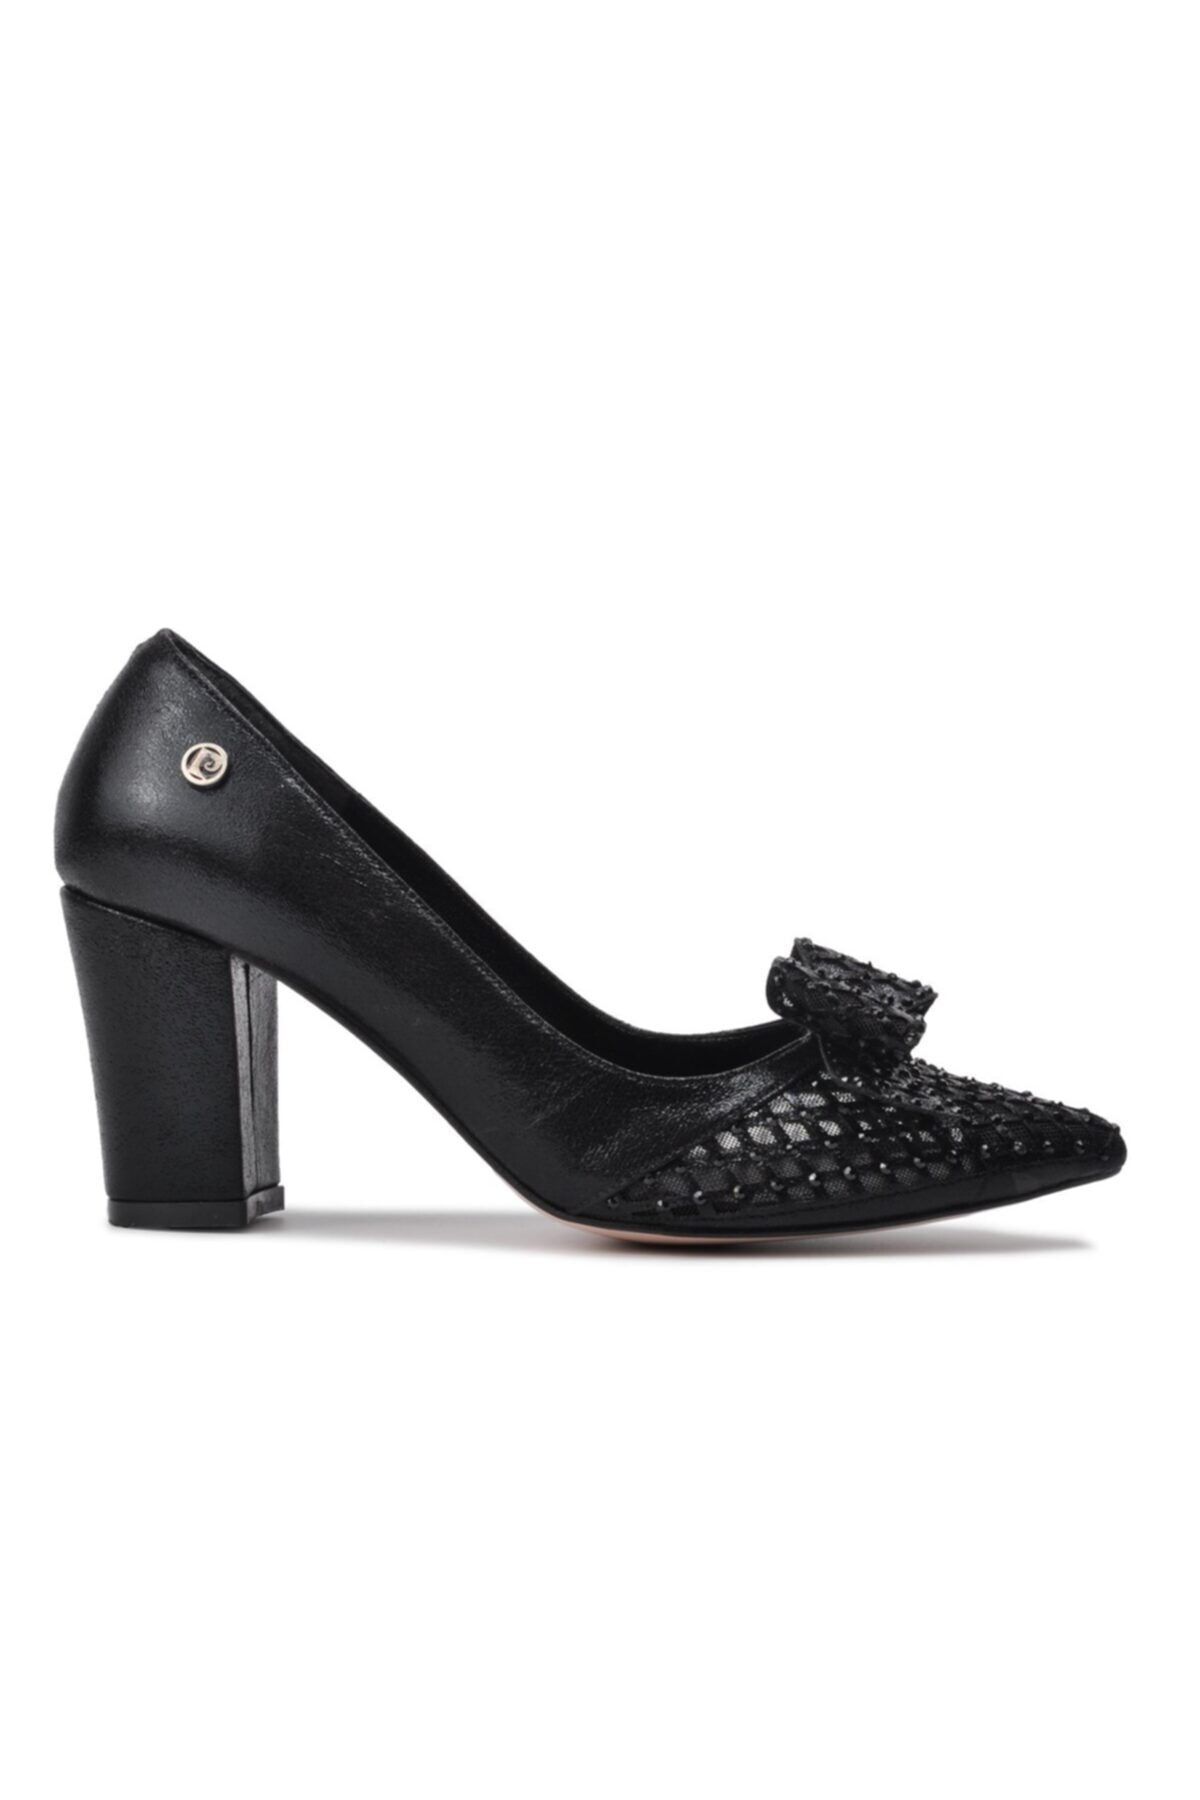 Pierre Cardin Kadın Topuklu Ayakkabı Pc-51211